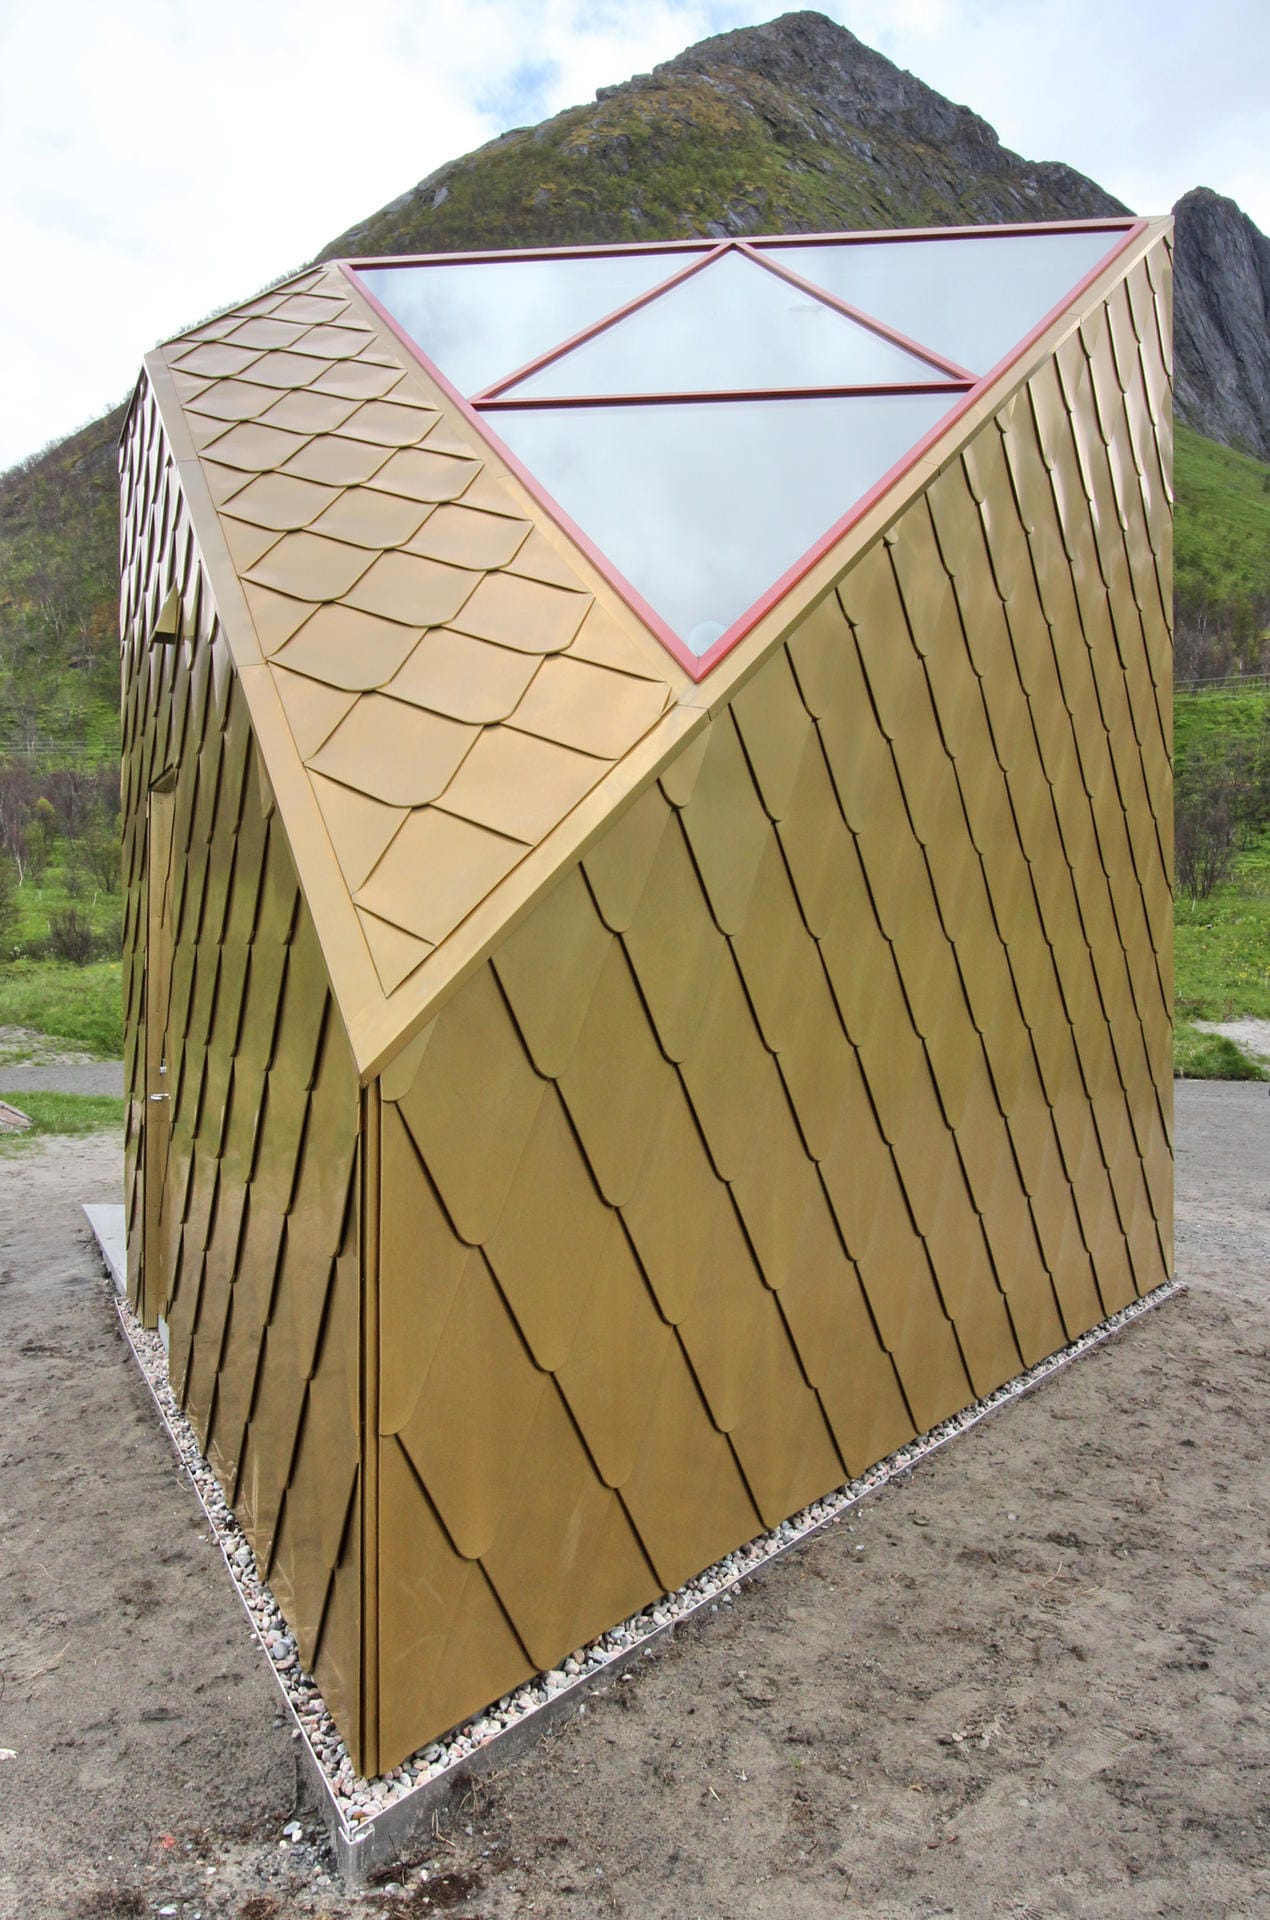 Wie ein gestrandetes Raumschiff sieht die goldene Toilette am Rastplatz Ersfjordstrand aus - stolze 3,5 Millionen Kronen hat das Häuschen gekostet, rund 387 000 Euro.